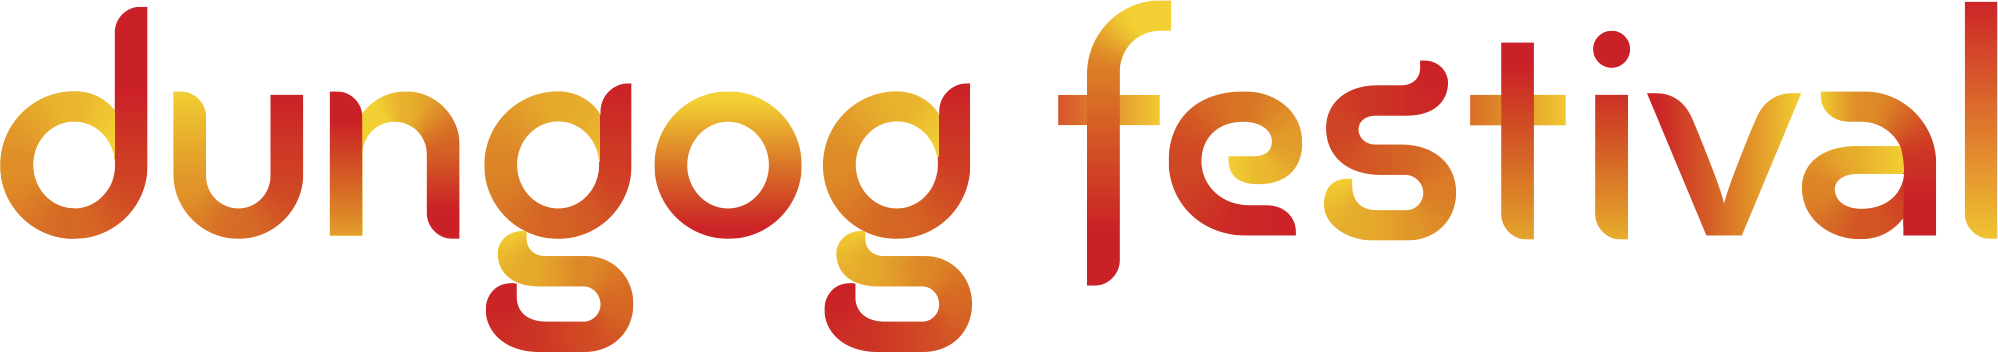 DFB-Logo-160512-FC-GRAD-POS-1 Tier-RGB.png